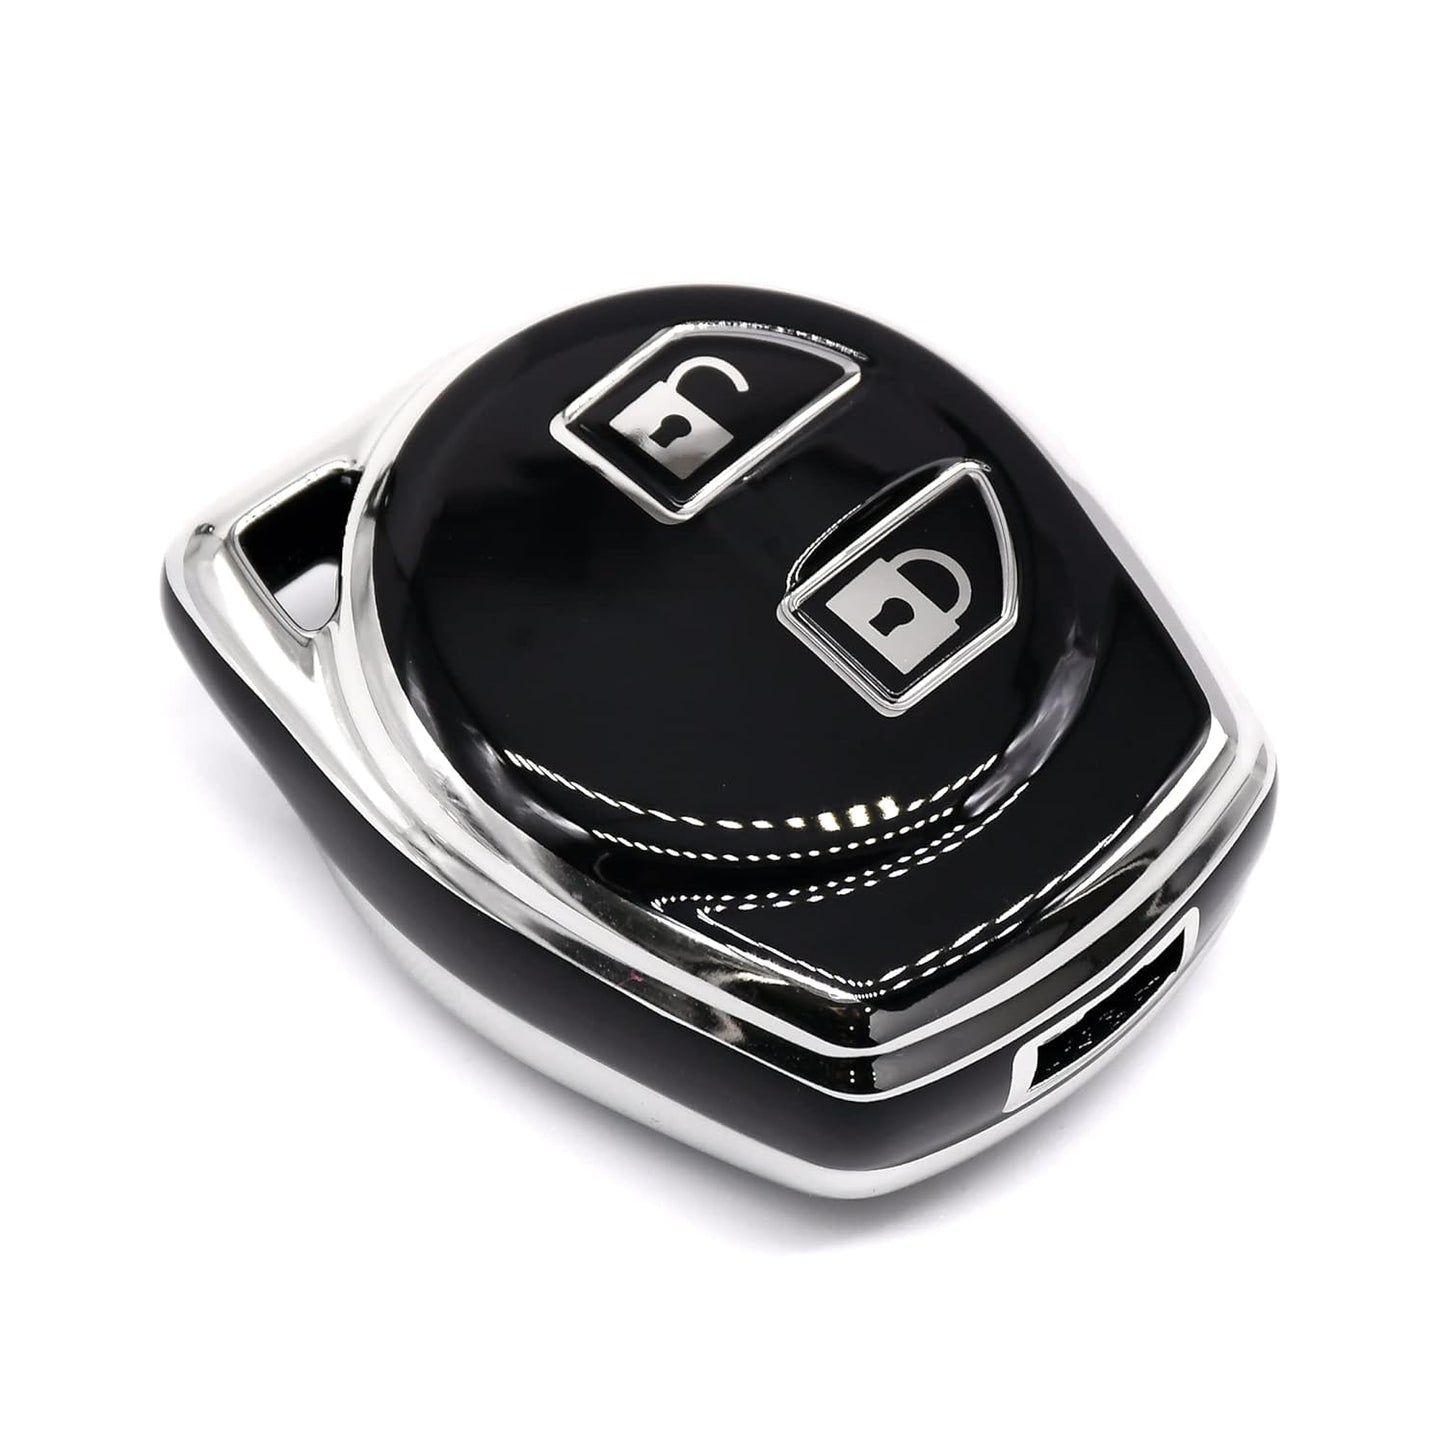 
                  
                    KMH Silver Border TPU Key Cover Compatible for Maruti Suzuki S-Presso, Dzire, Ignis, Alto, Vitara, Brezza, Celerio, Ertiga, Ciaz, S-Cross, Baleno 2 Button Smart Key Cover (Black-2)-TPU SILVER KEY COVER-KMH-CARPLUS
                  
                